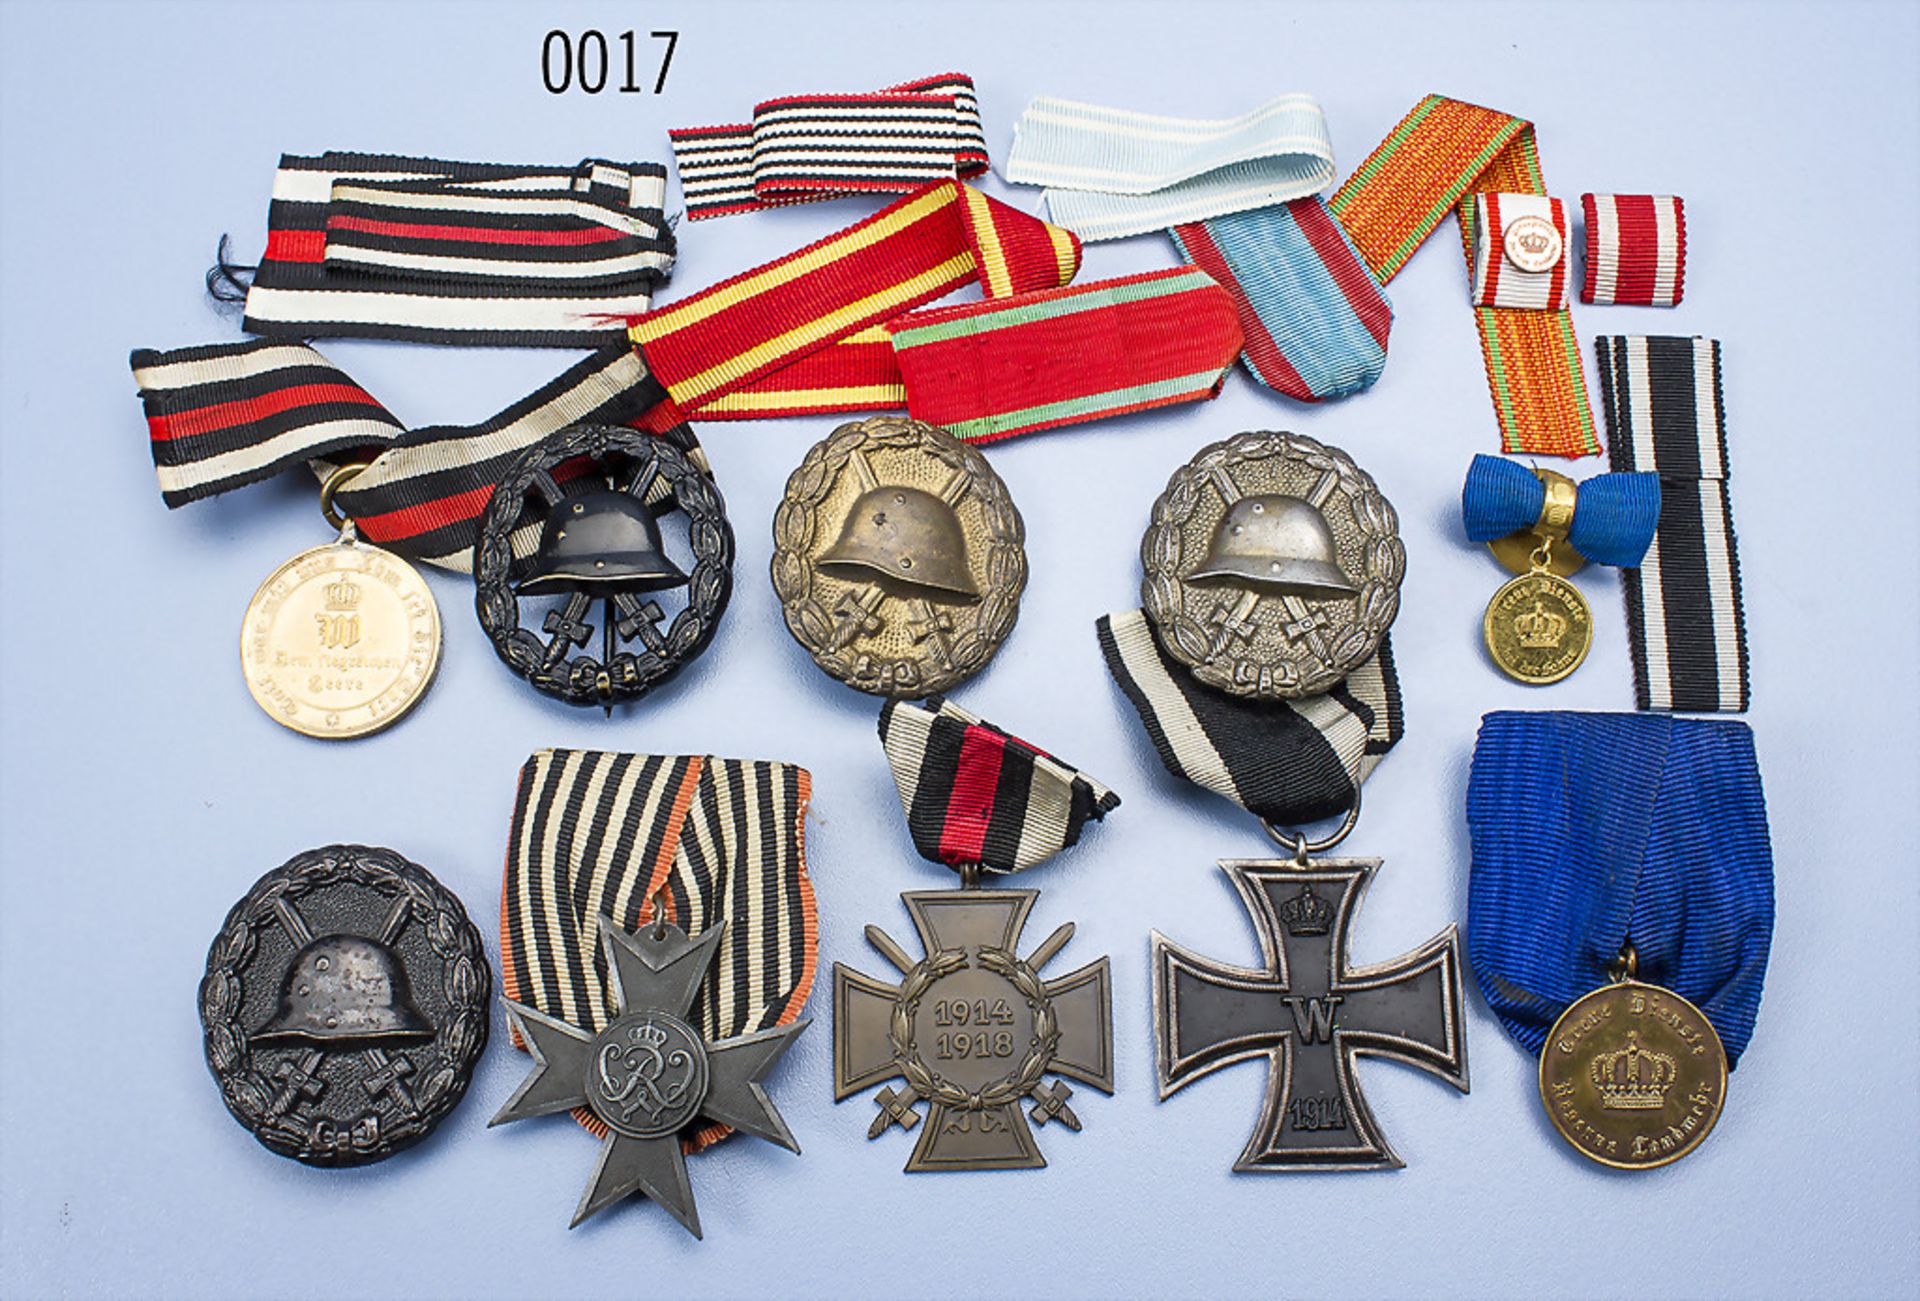 Konv. EK 2 1914, KDM 1870/71, Landwehr-Dienstauszeichnung 2. Klasse, Knopflochschleife mit